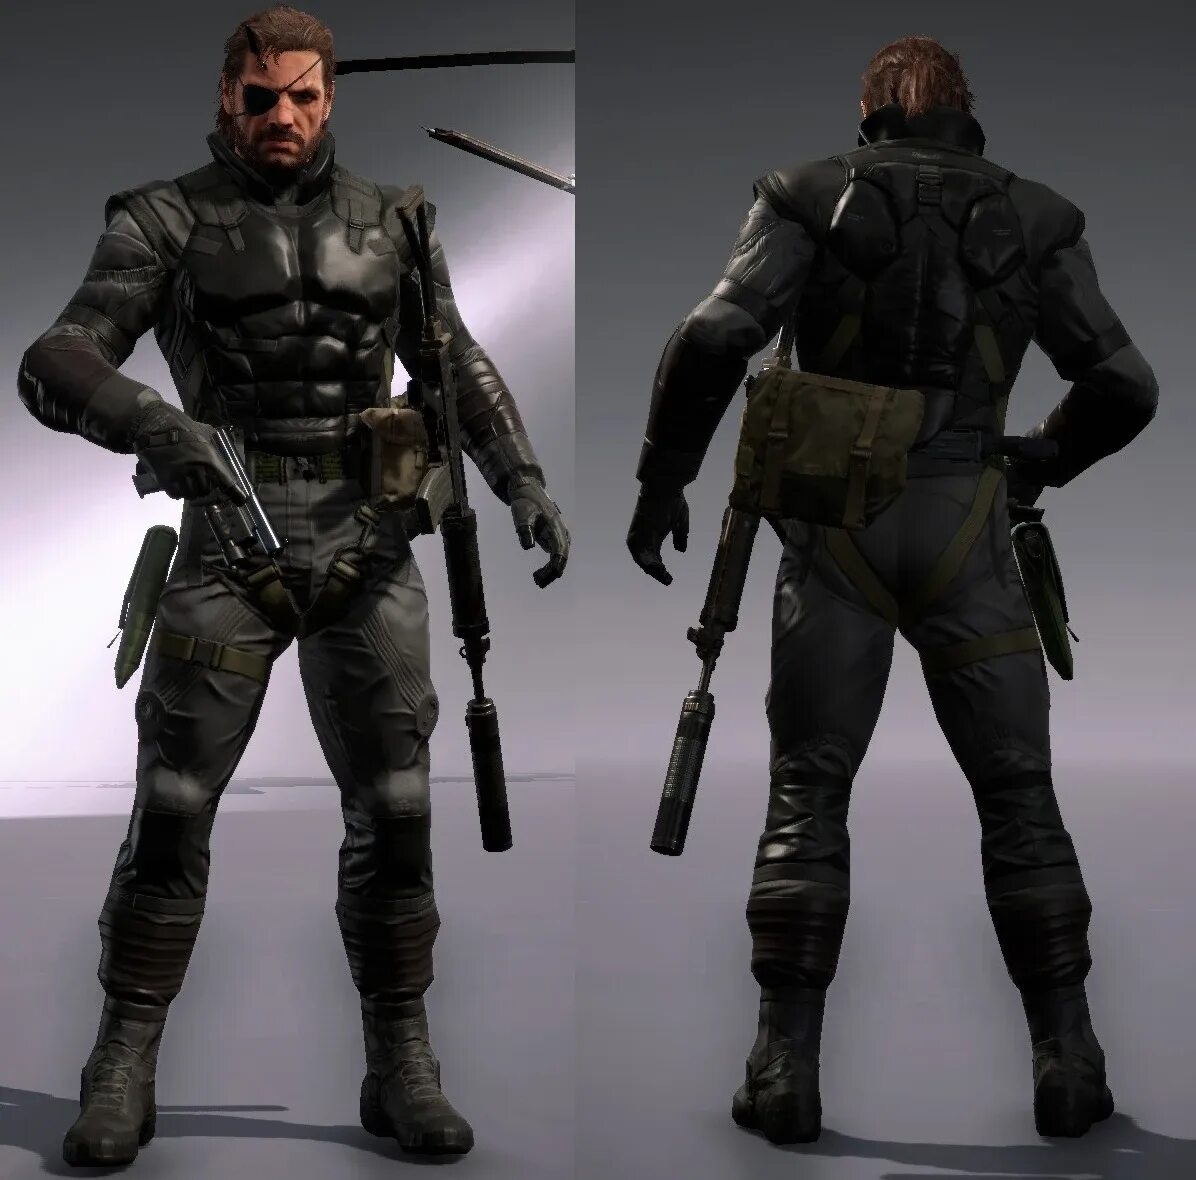 Snake mods. MGS 5 костюмы. Костюм Снейка Metal Gear. Metal Gear Solid 5 костюмы. Костюм Снейка МГС 5.